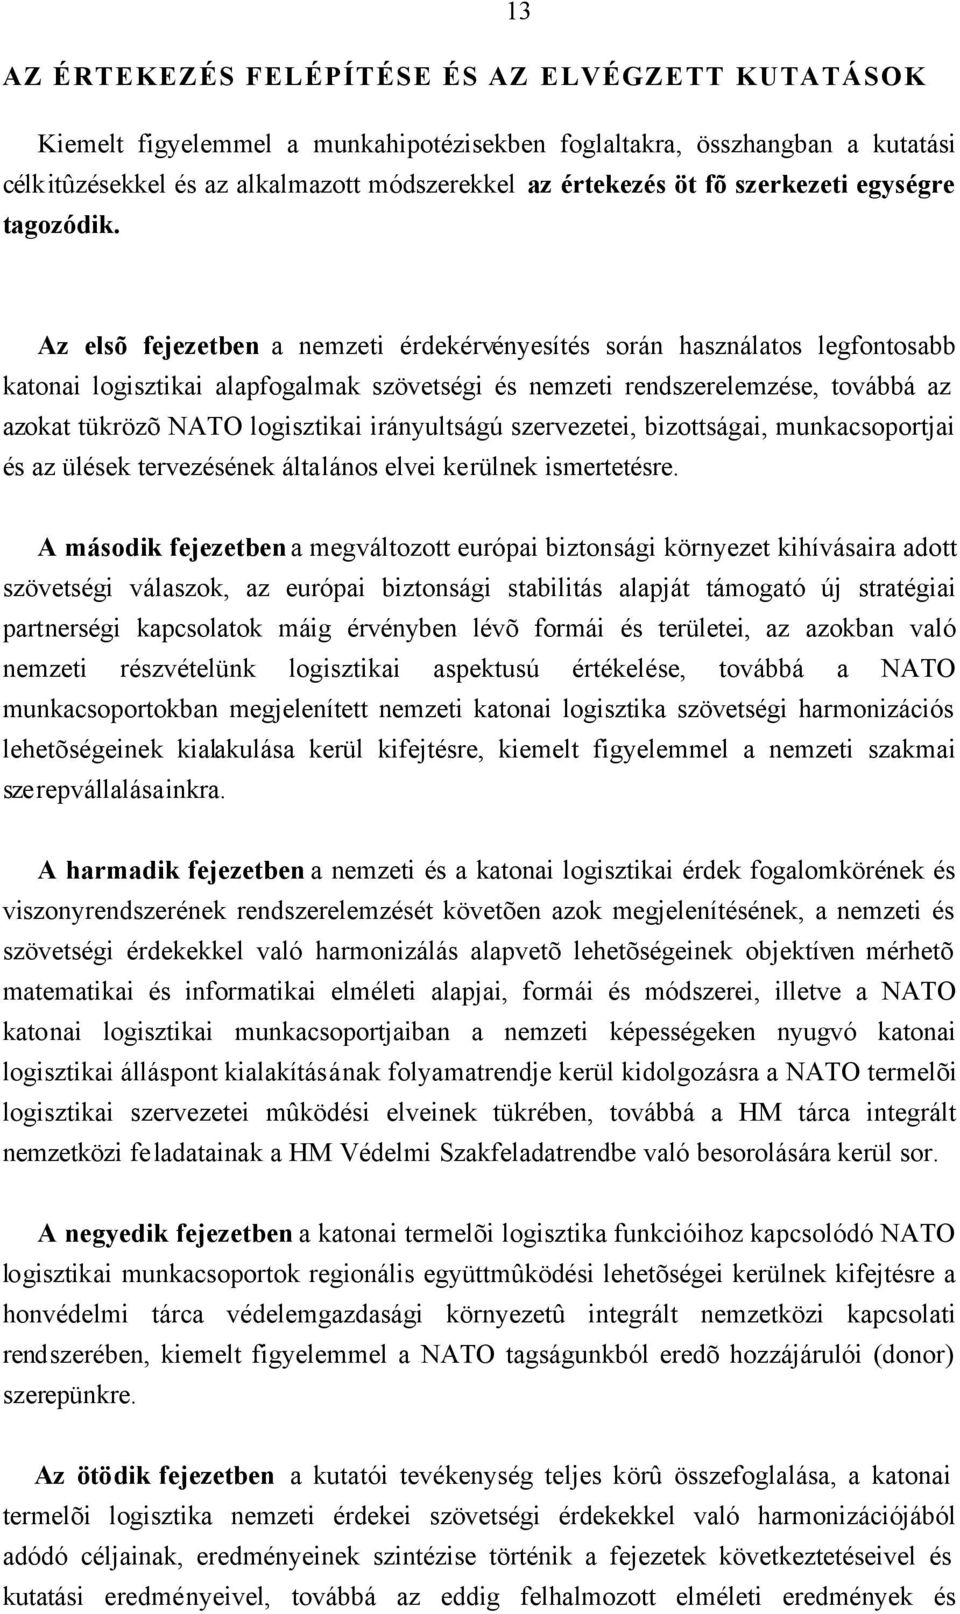 Az elsõ fejezetben a nemzeti érdekérvényesítés során használatos legfontosabb katonai logisztikai alapfogalmak szövetségi és nemzeti rendszerelemzése, továbbá az azokat tükrözõ NATO logisztikai